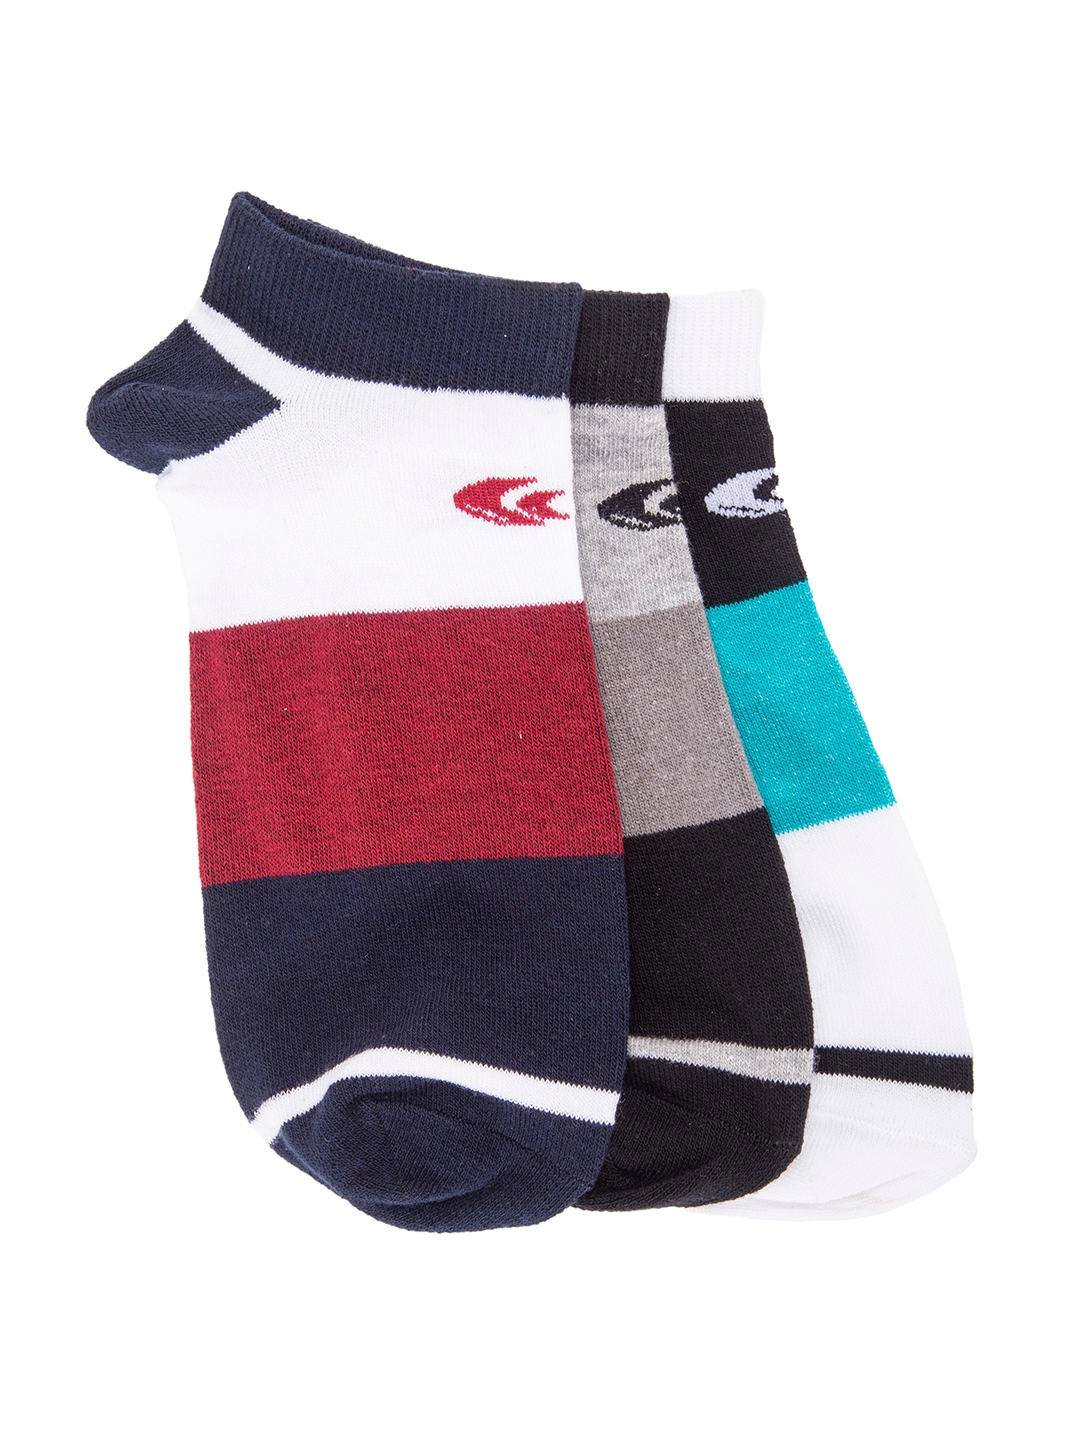 Allen Cooper | Allen Cooper Multi-Coloured Colourblock Pack of 3 Ankle Socks